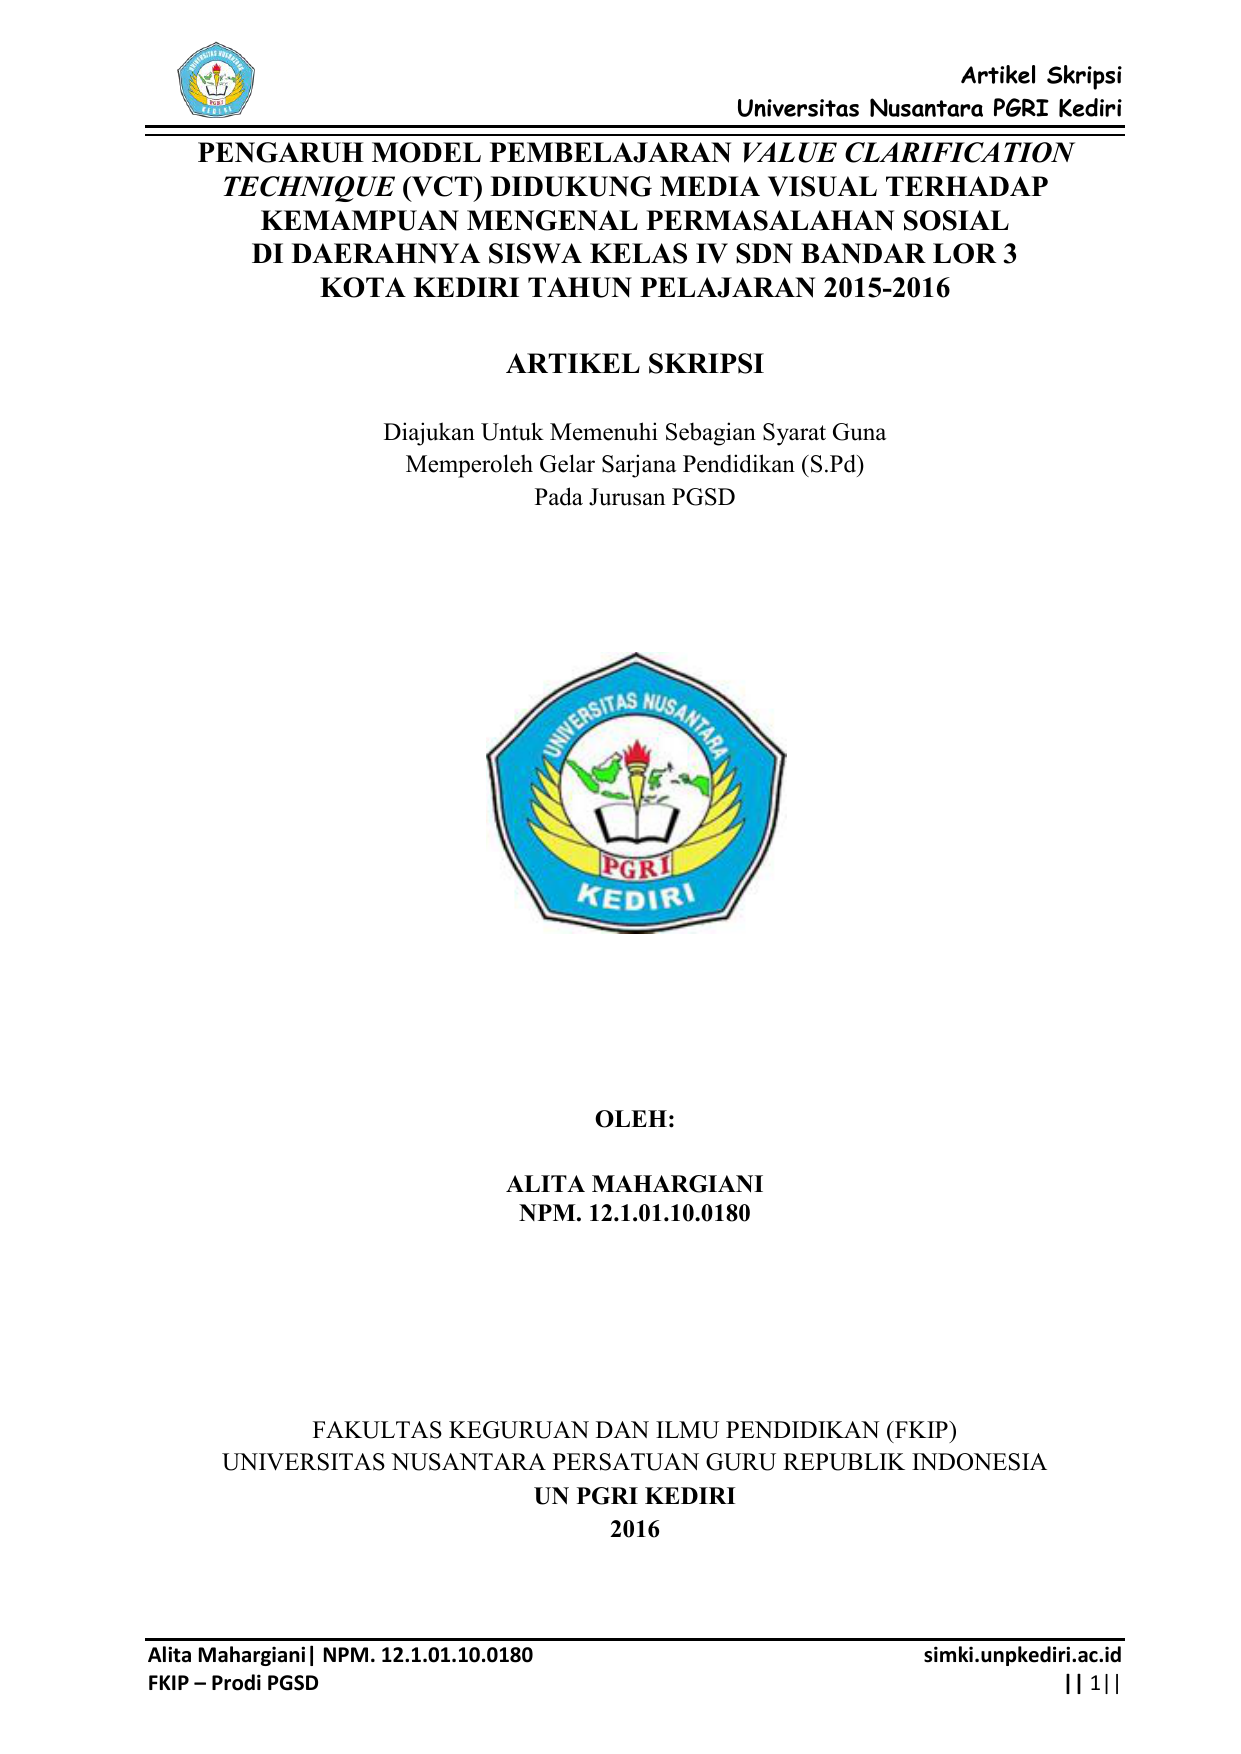 Artikel Skripsi Universitas Nusantara PGRI Kediri PENGARUH MODEL PEMBELAJARAN VALUE CLARIFICATION TECHNIQUE VCT DIDUKUNG MEDIA VISUAL TERHADAP KEMAMPUAN